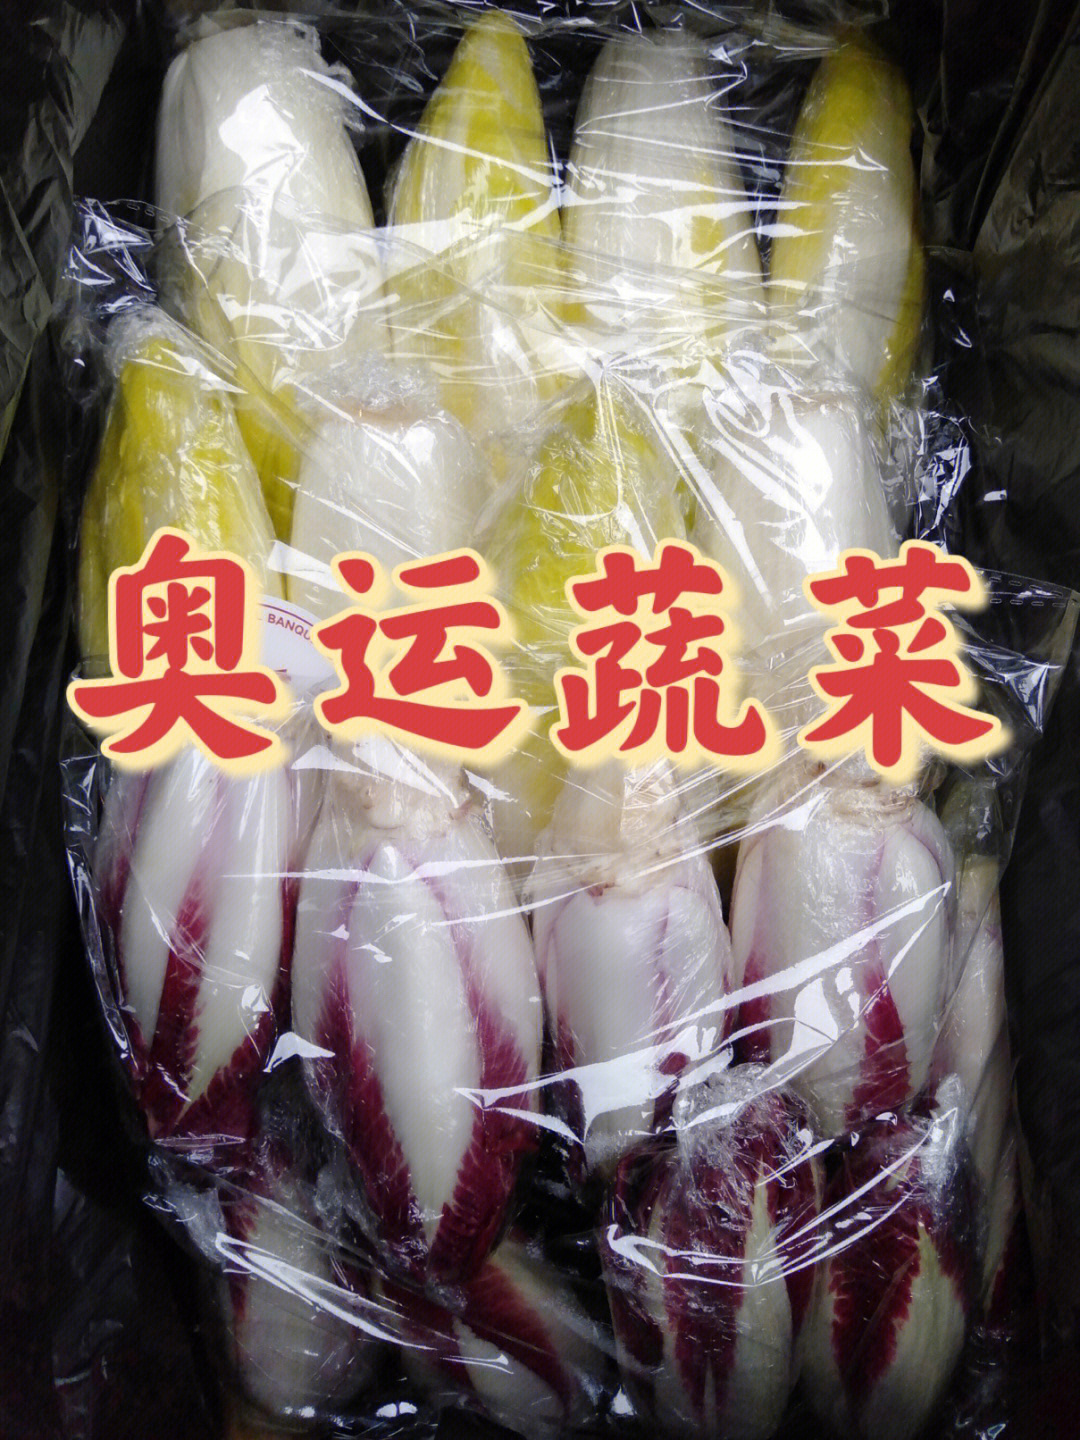 菊苣纤维大健康产业图片